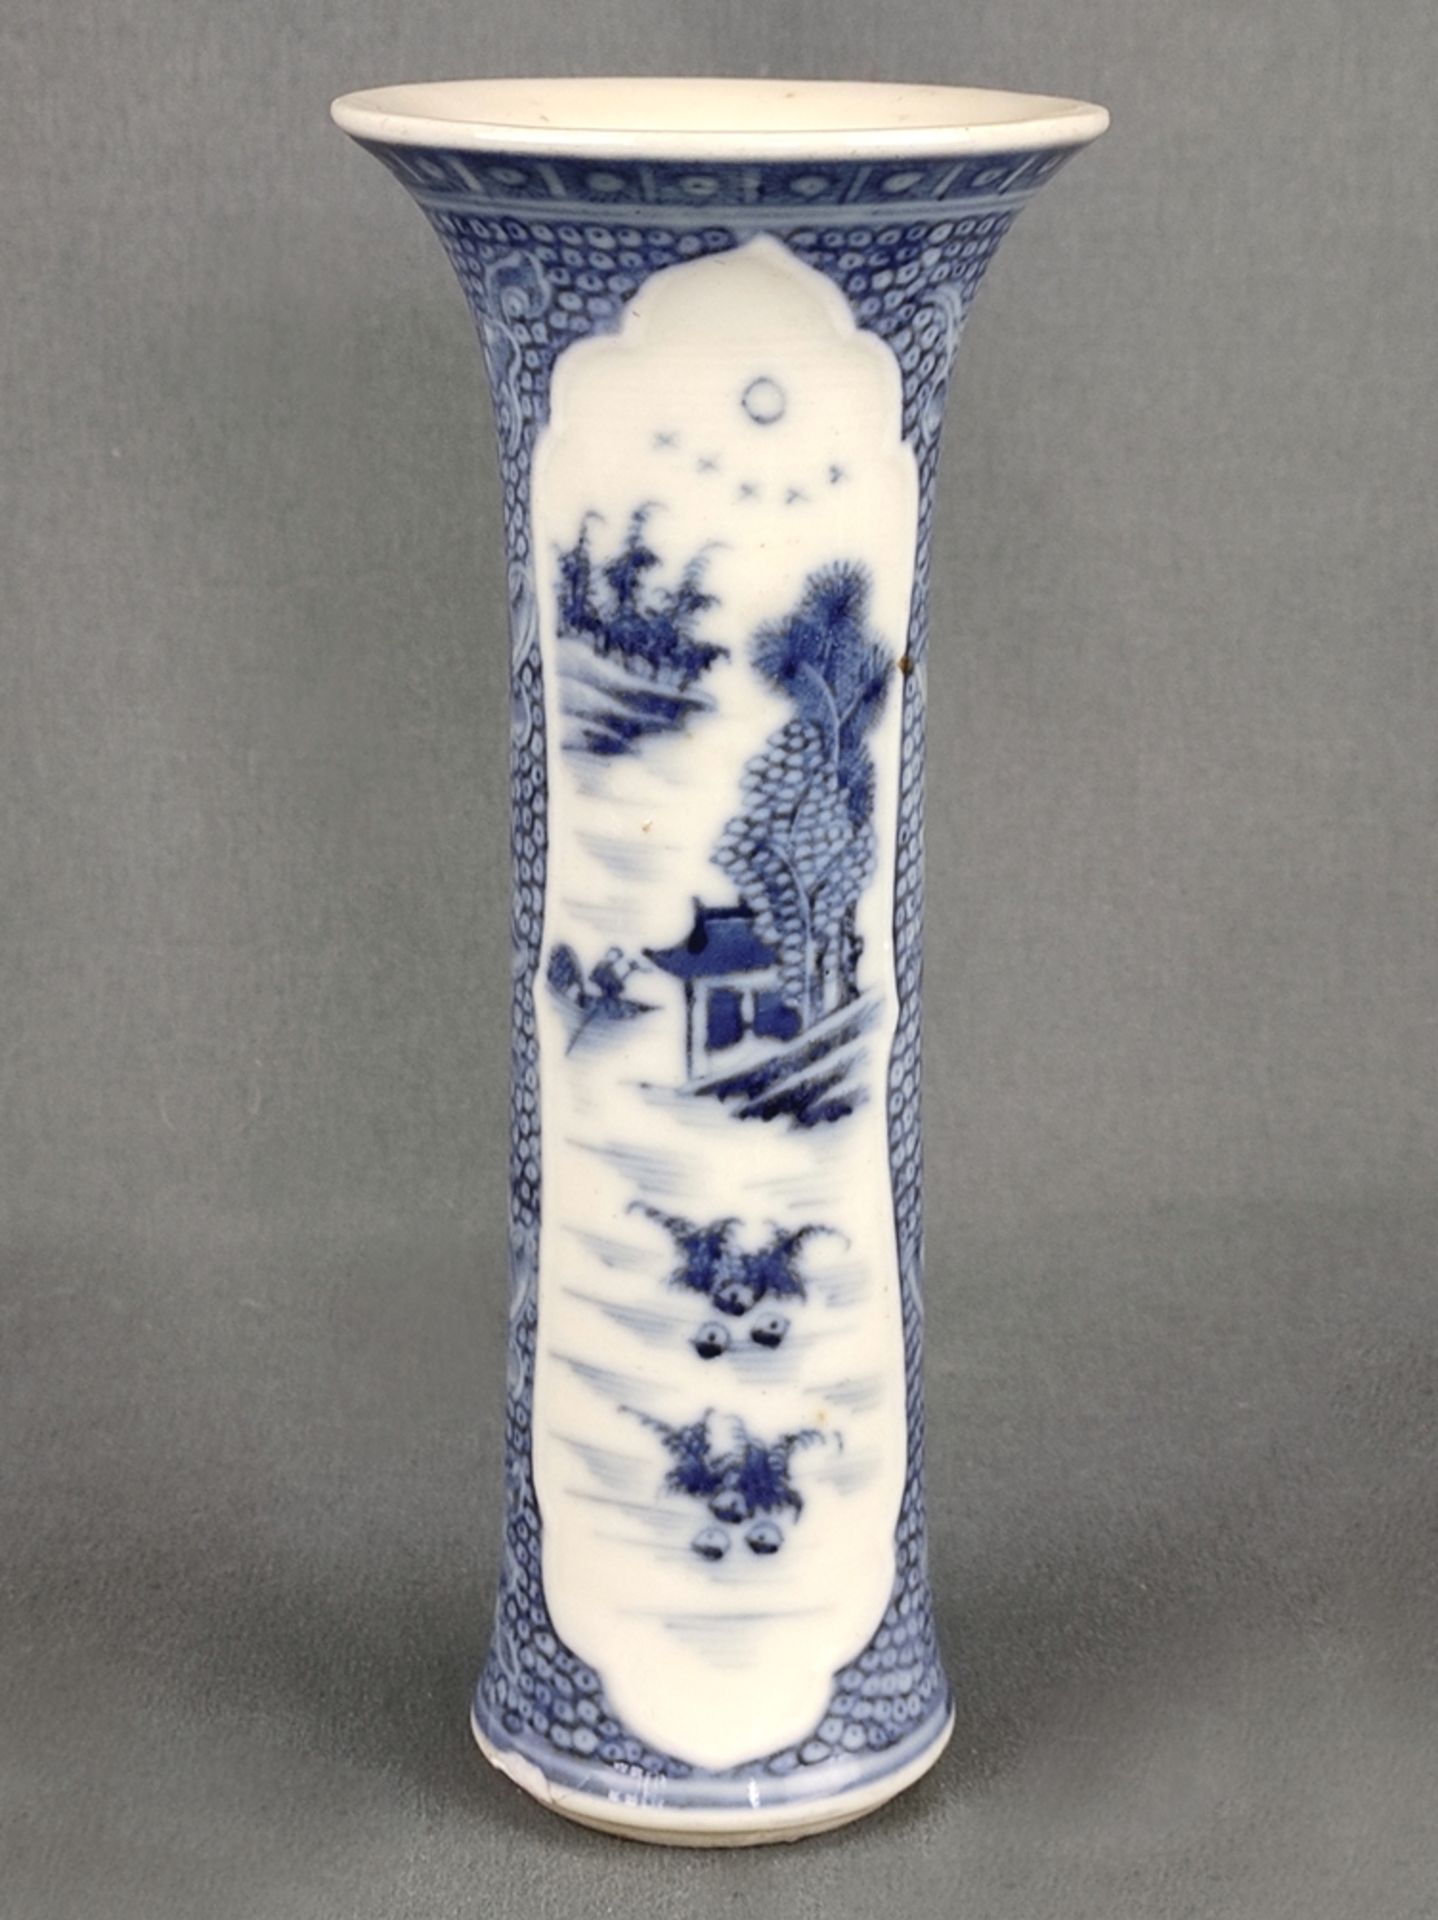 Vase, China, 19. Jahrhundert, gerade Form mit ausgestelltem Rand, fein dekoriert in Blaumalerei mit